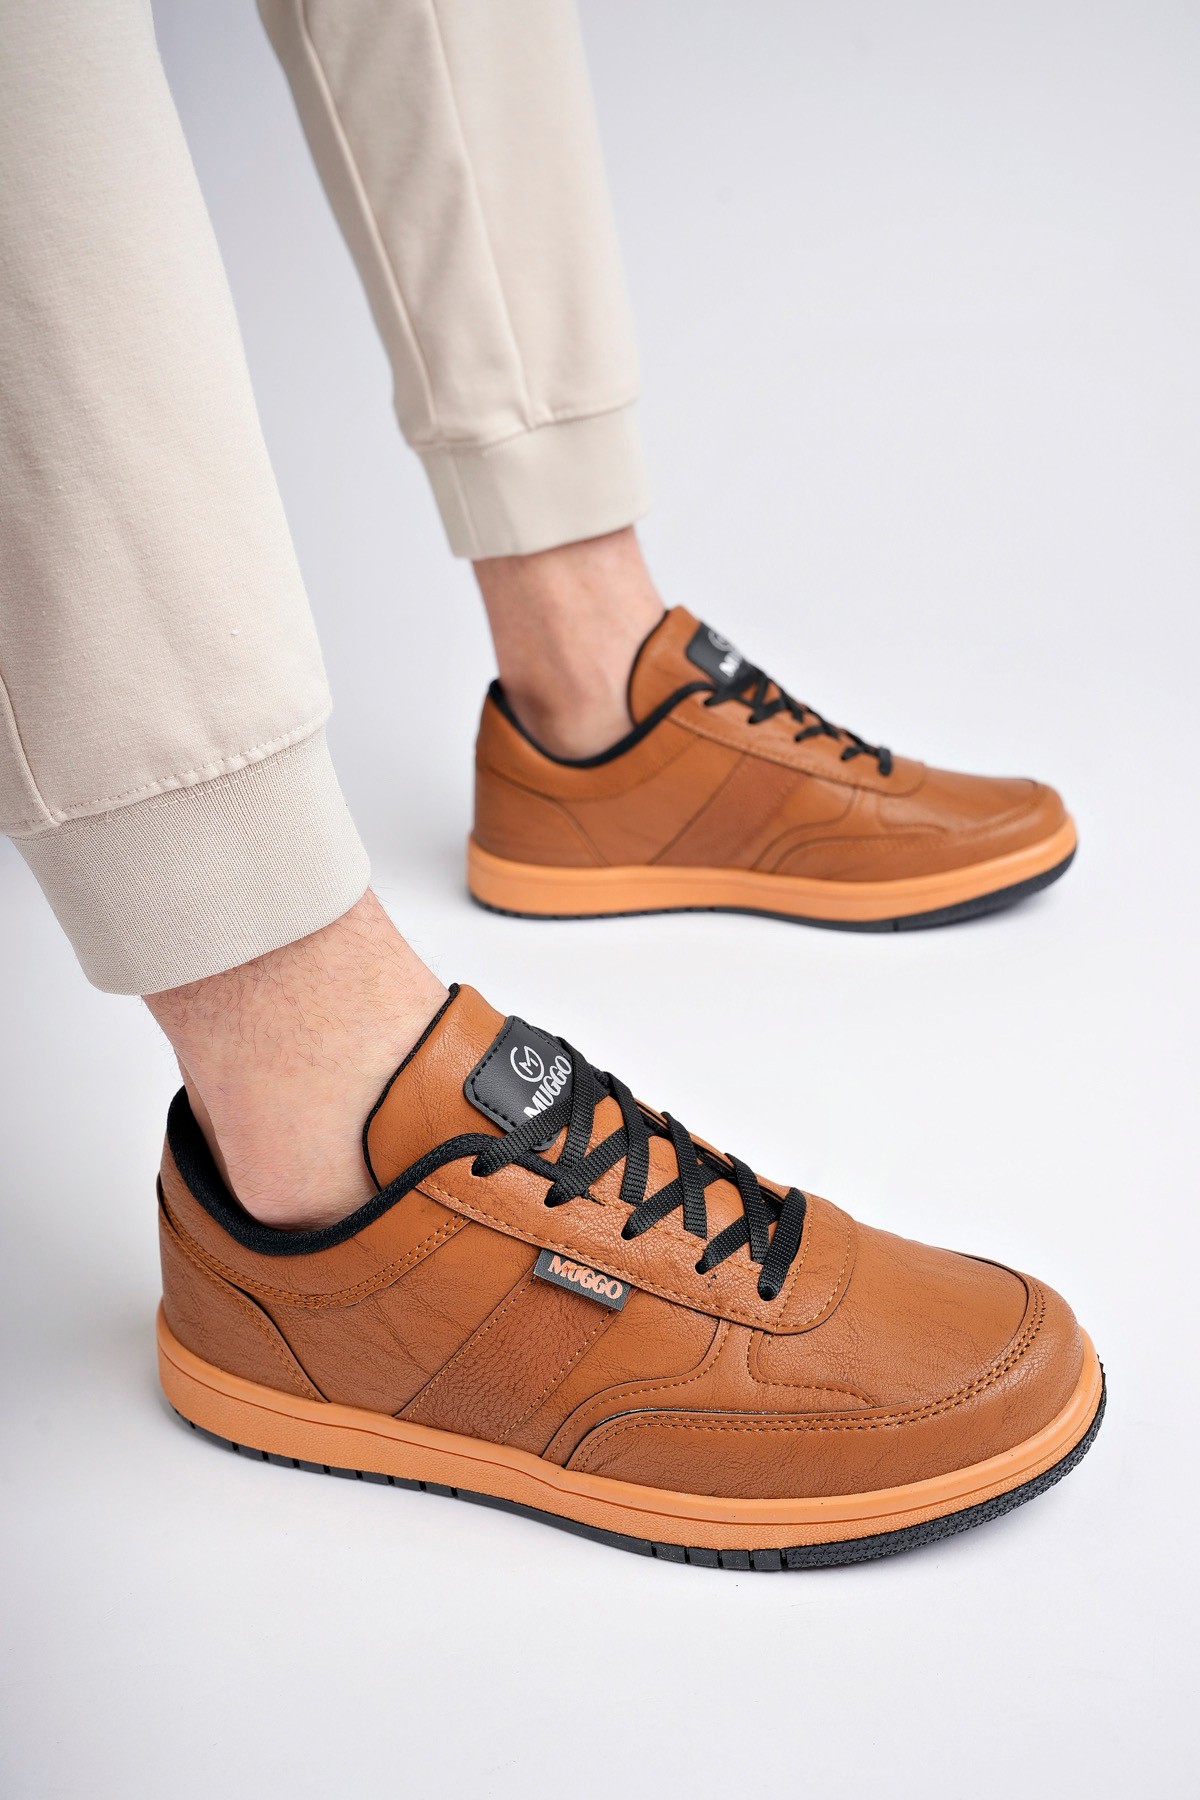 Muggo JOEL Garantili Erkek Günlük Casual Bağcıklı Sneaker Spor Ayakkabı - TABA